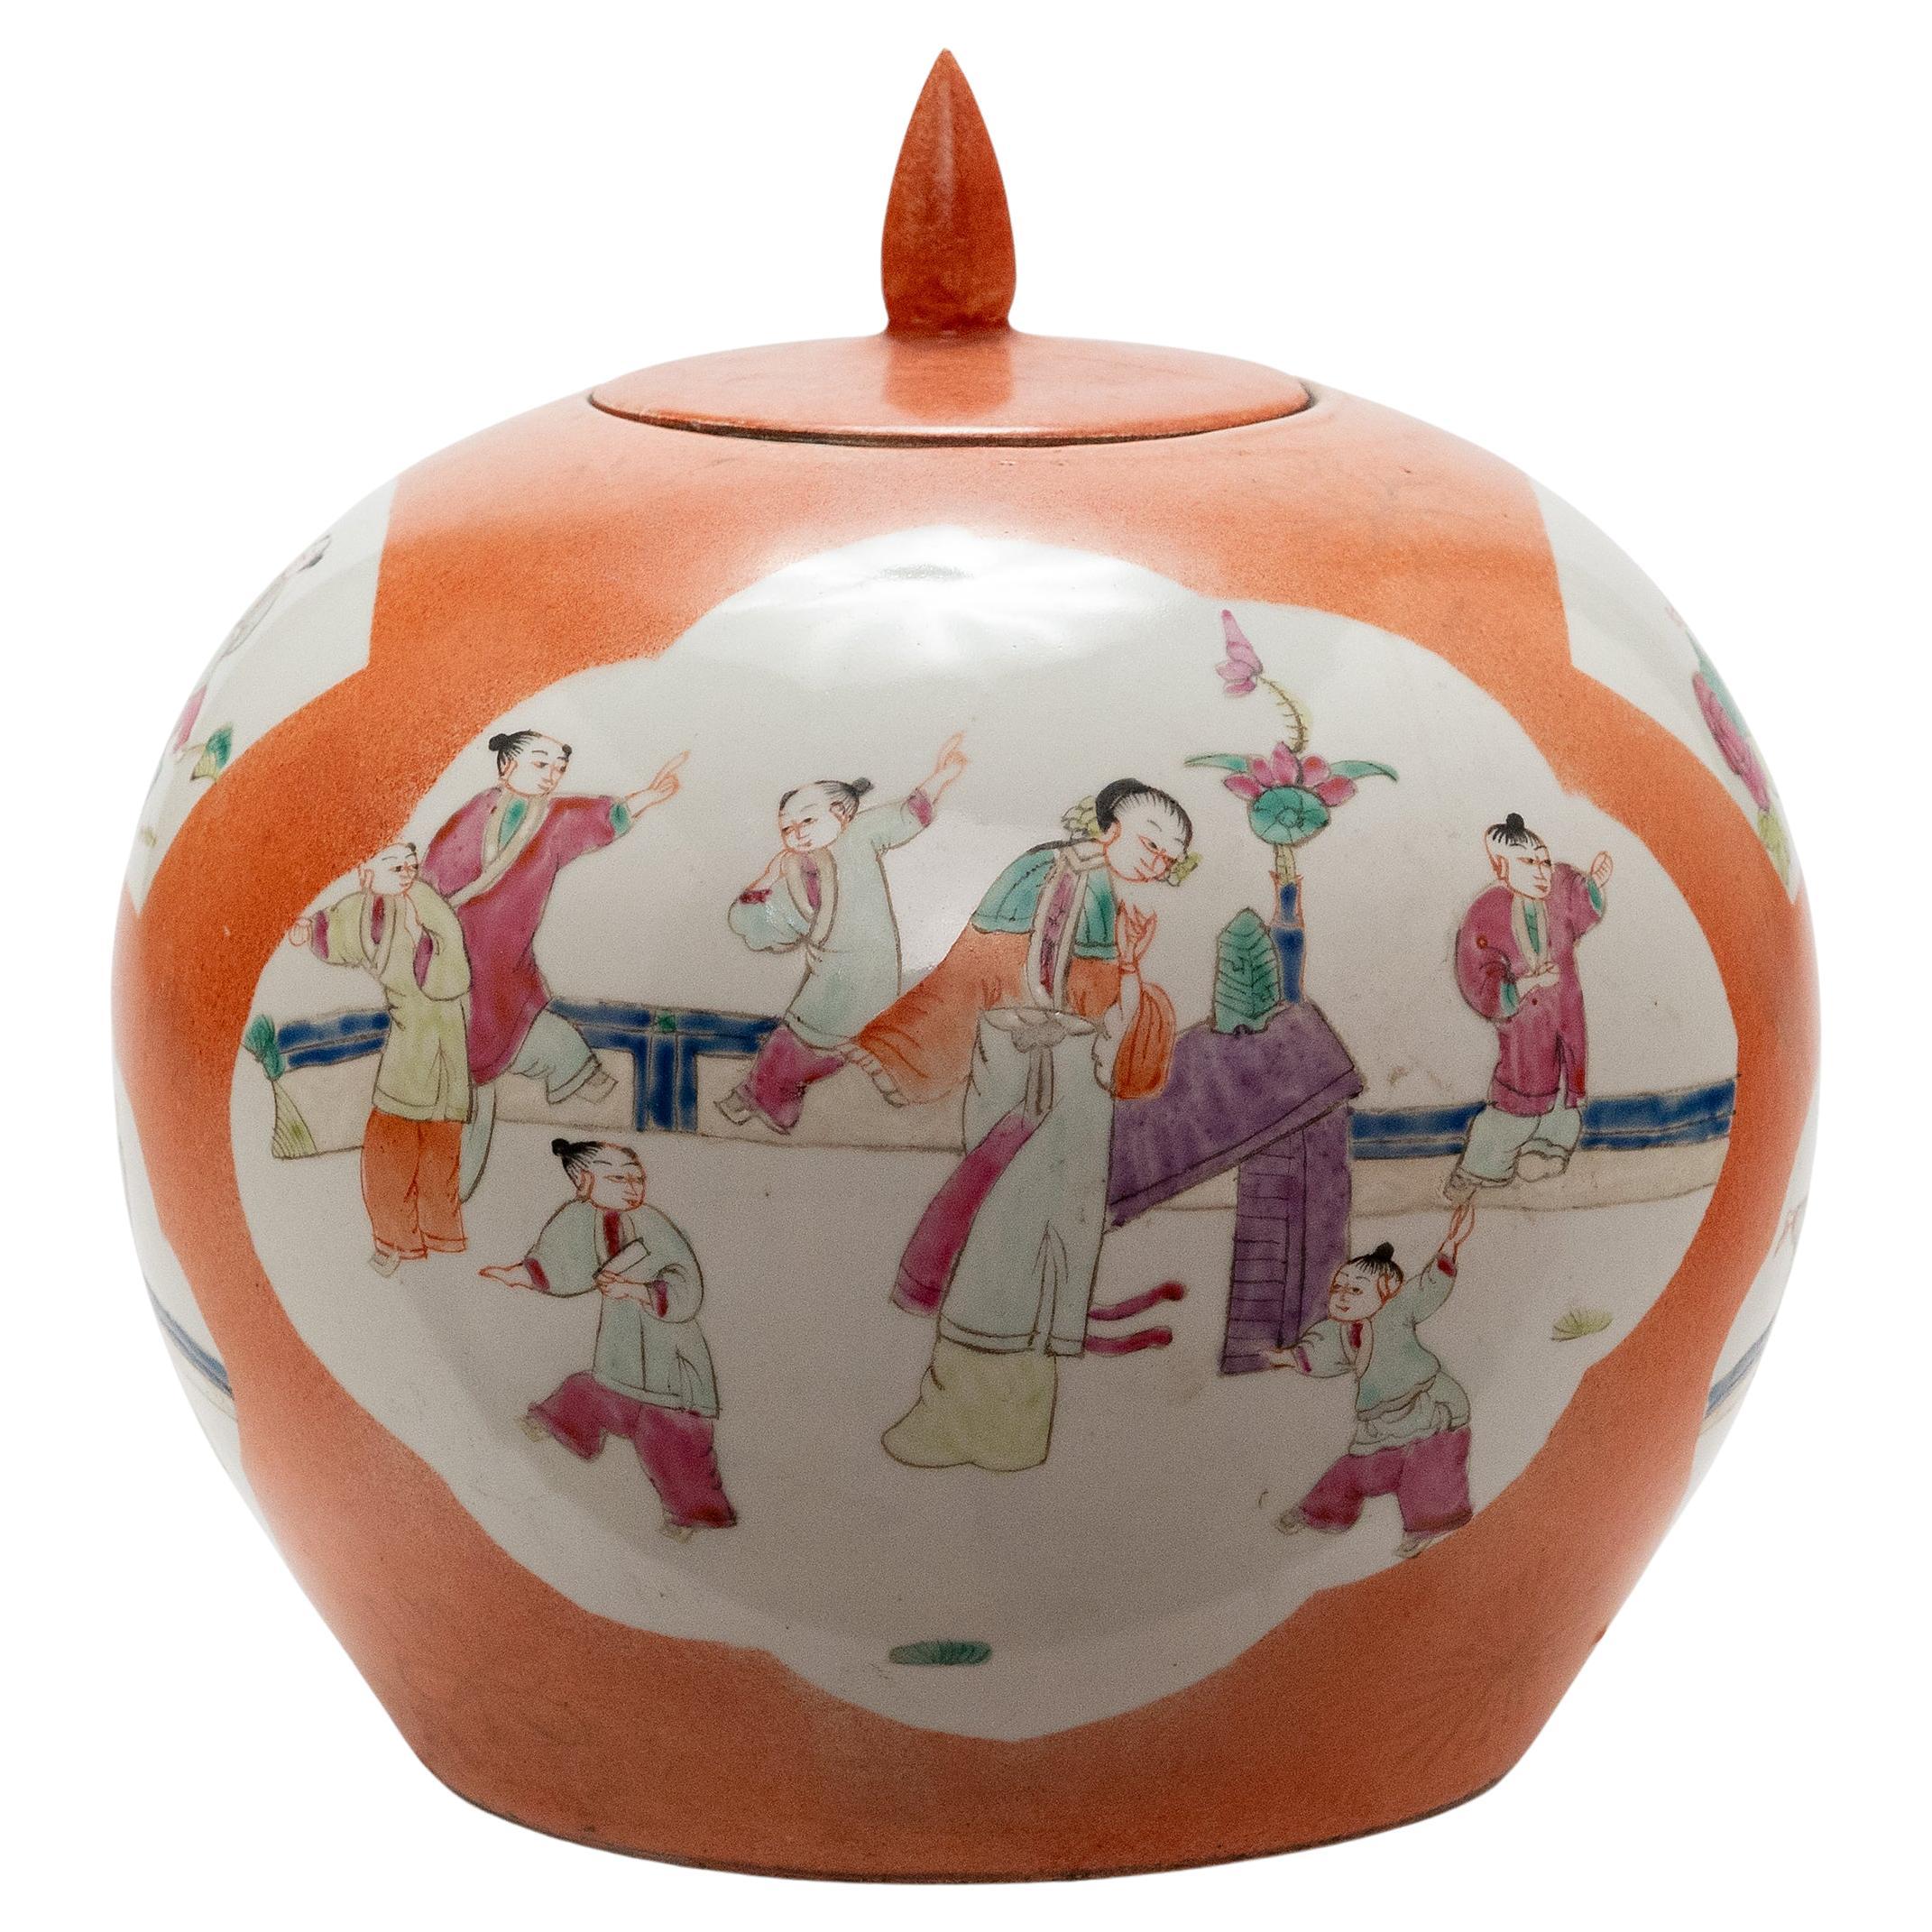 Round Chinese Persimmon Orange Jar, c. 1900